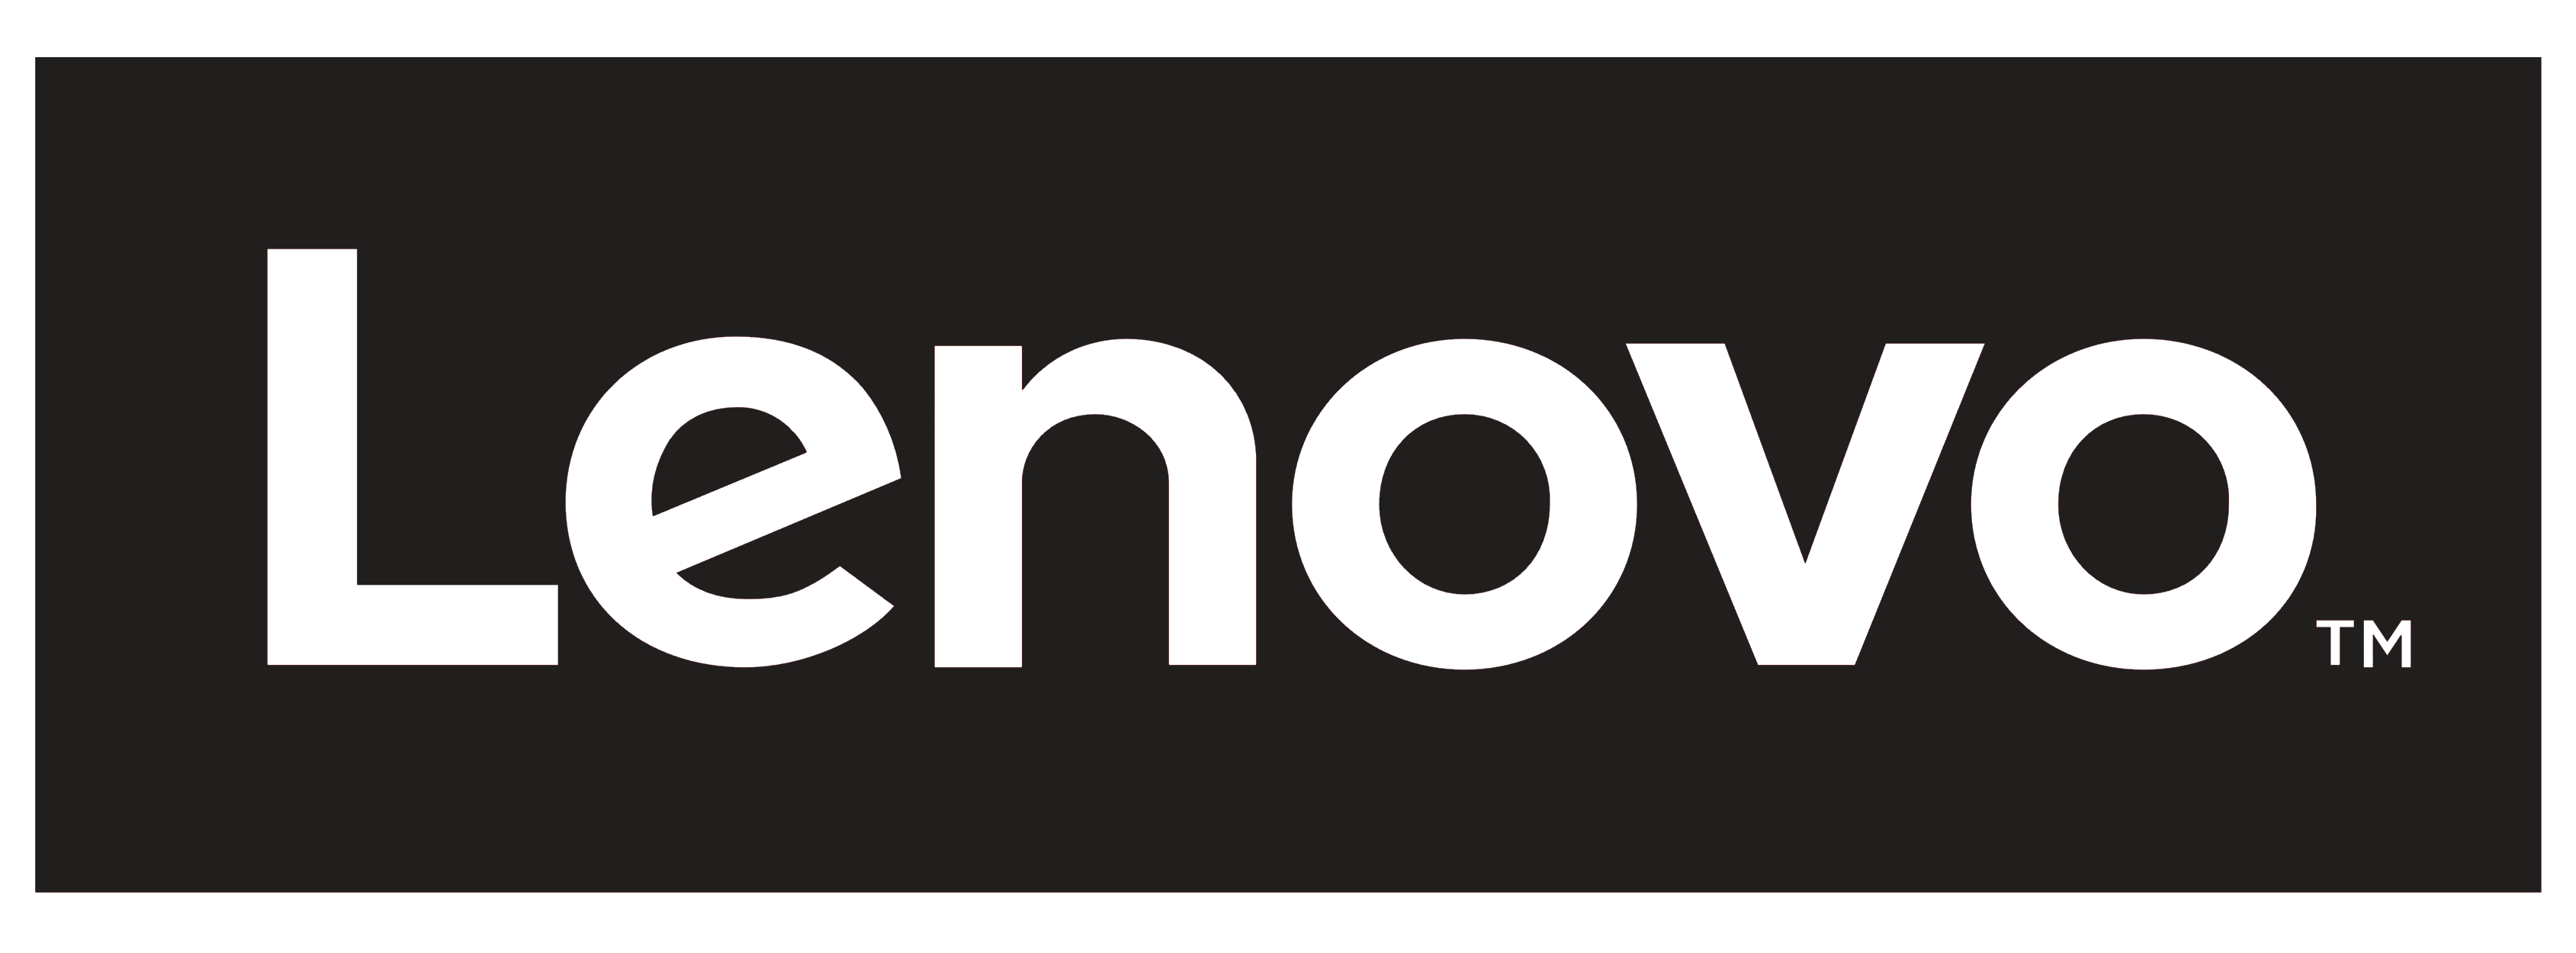 Download Lenovo Logo Free Png